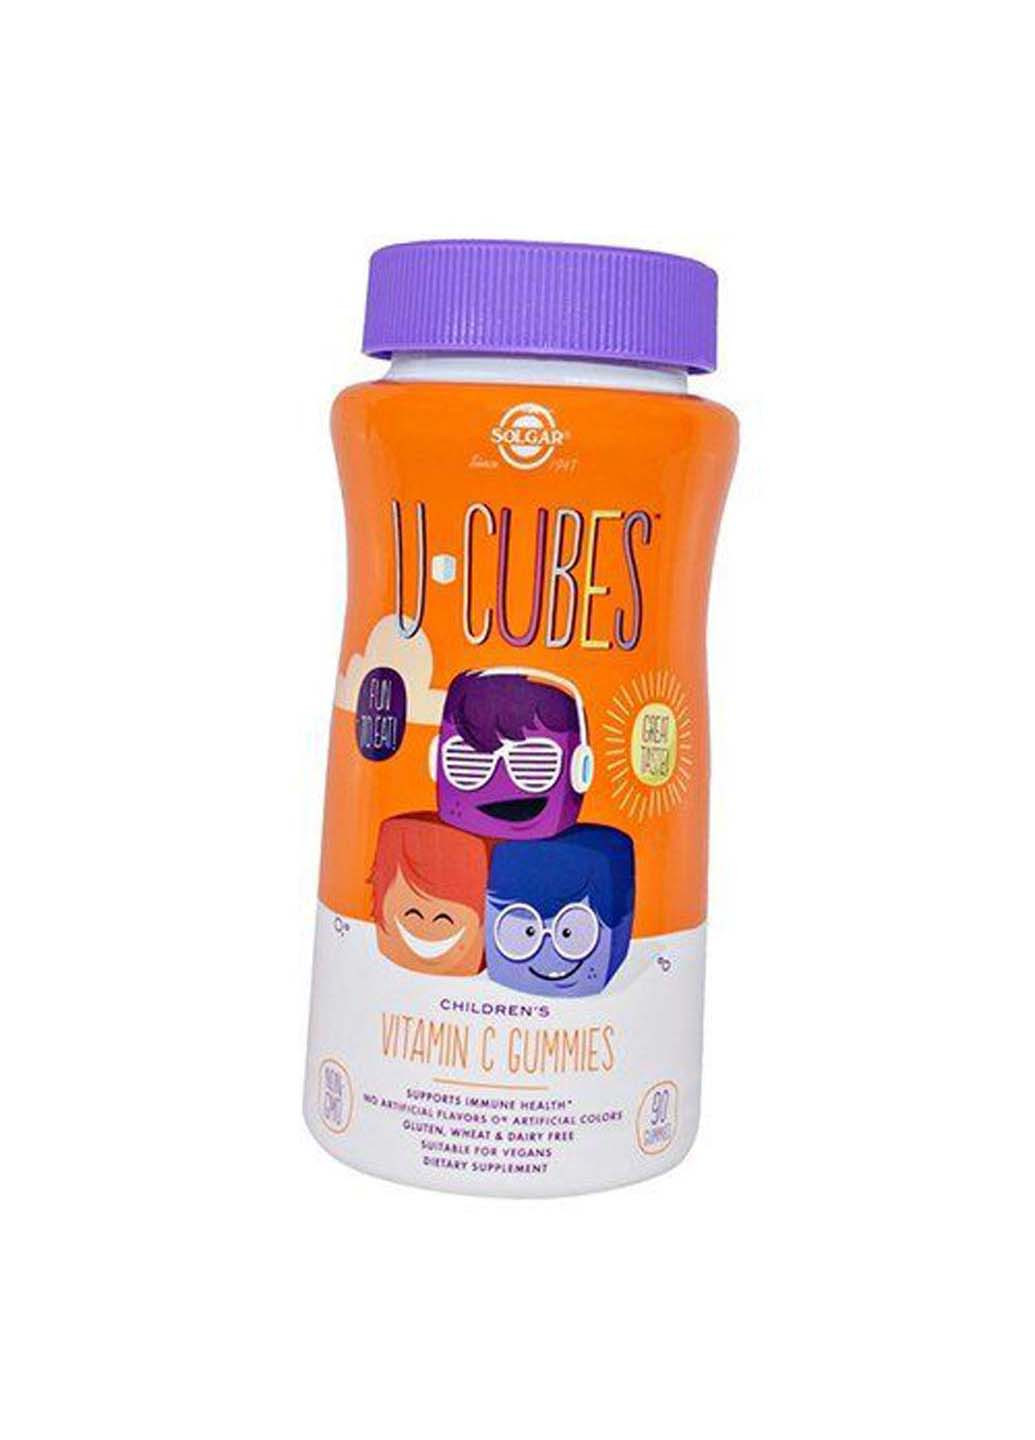 Жувальний Вітамін С для дітей U-Cubes Children's Vitamin C Gummies 90таб Полуниця-апельсин Solgar (275469441)